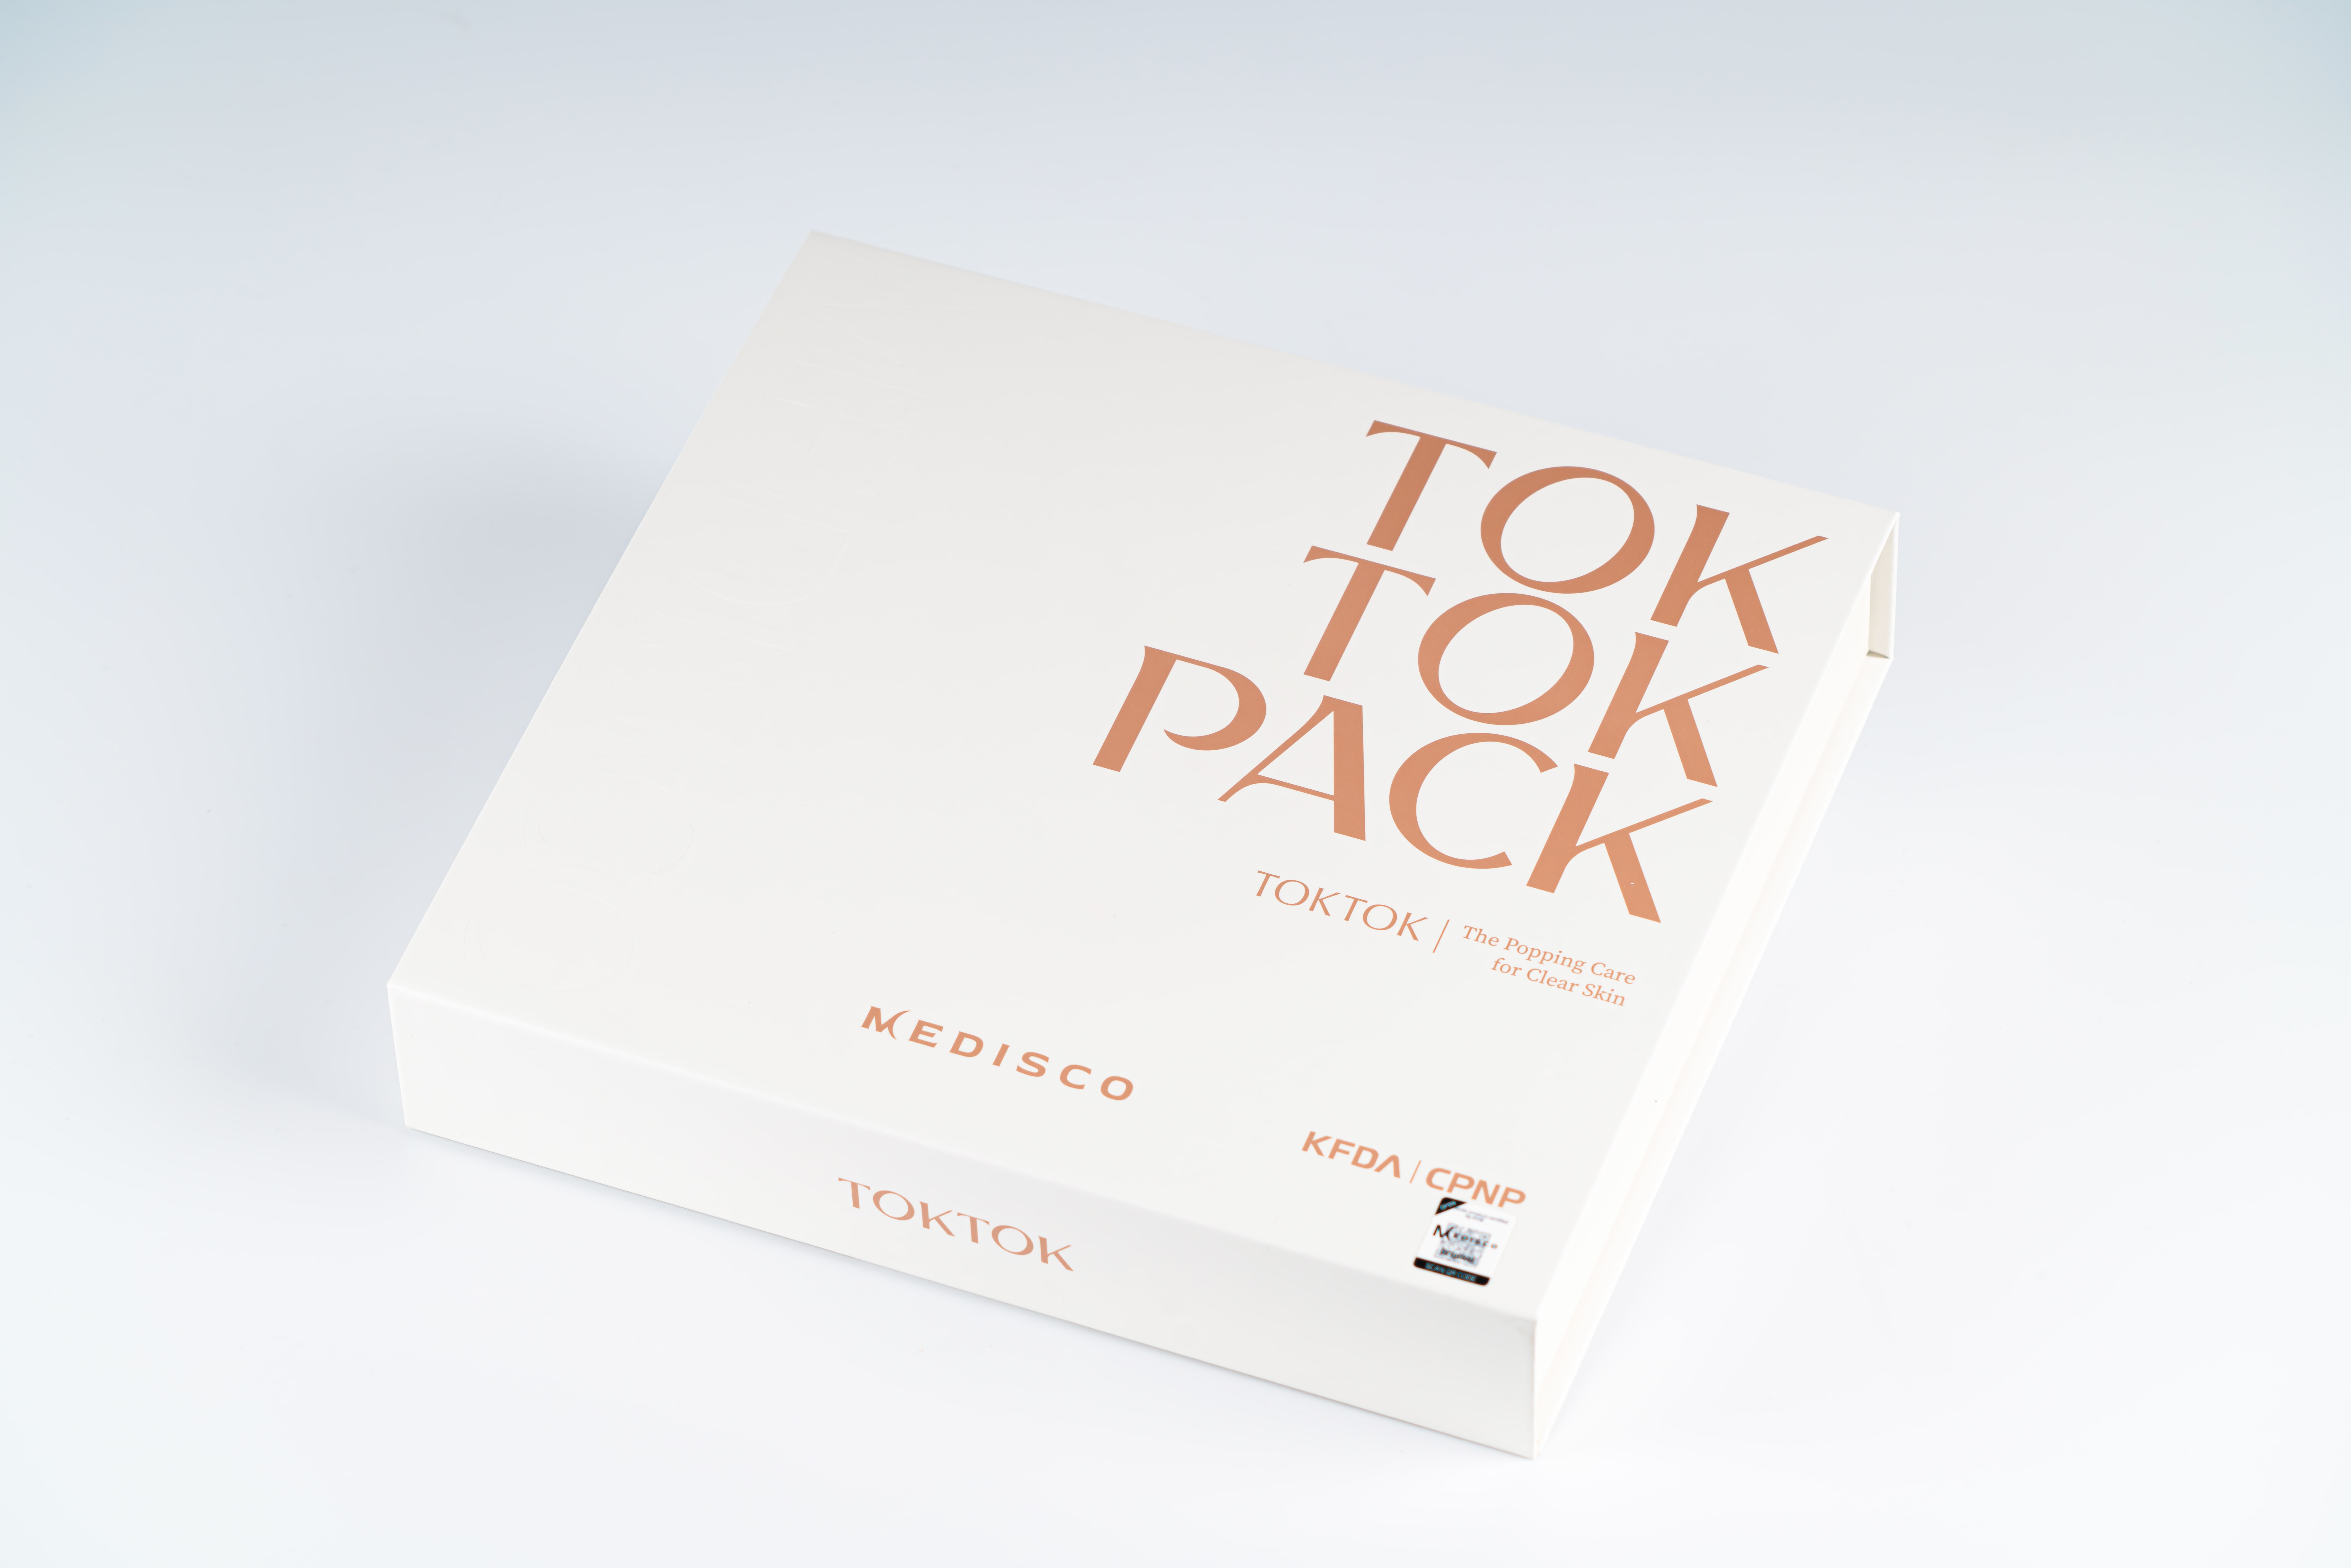 Tok Tok Pack Medisco Stayve